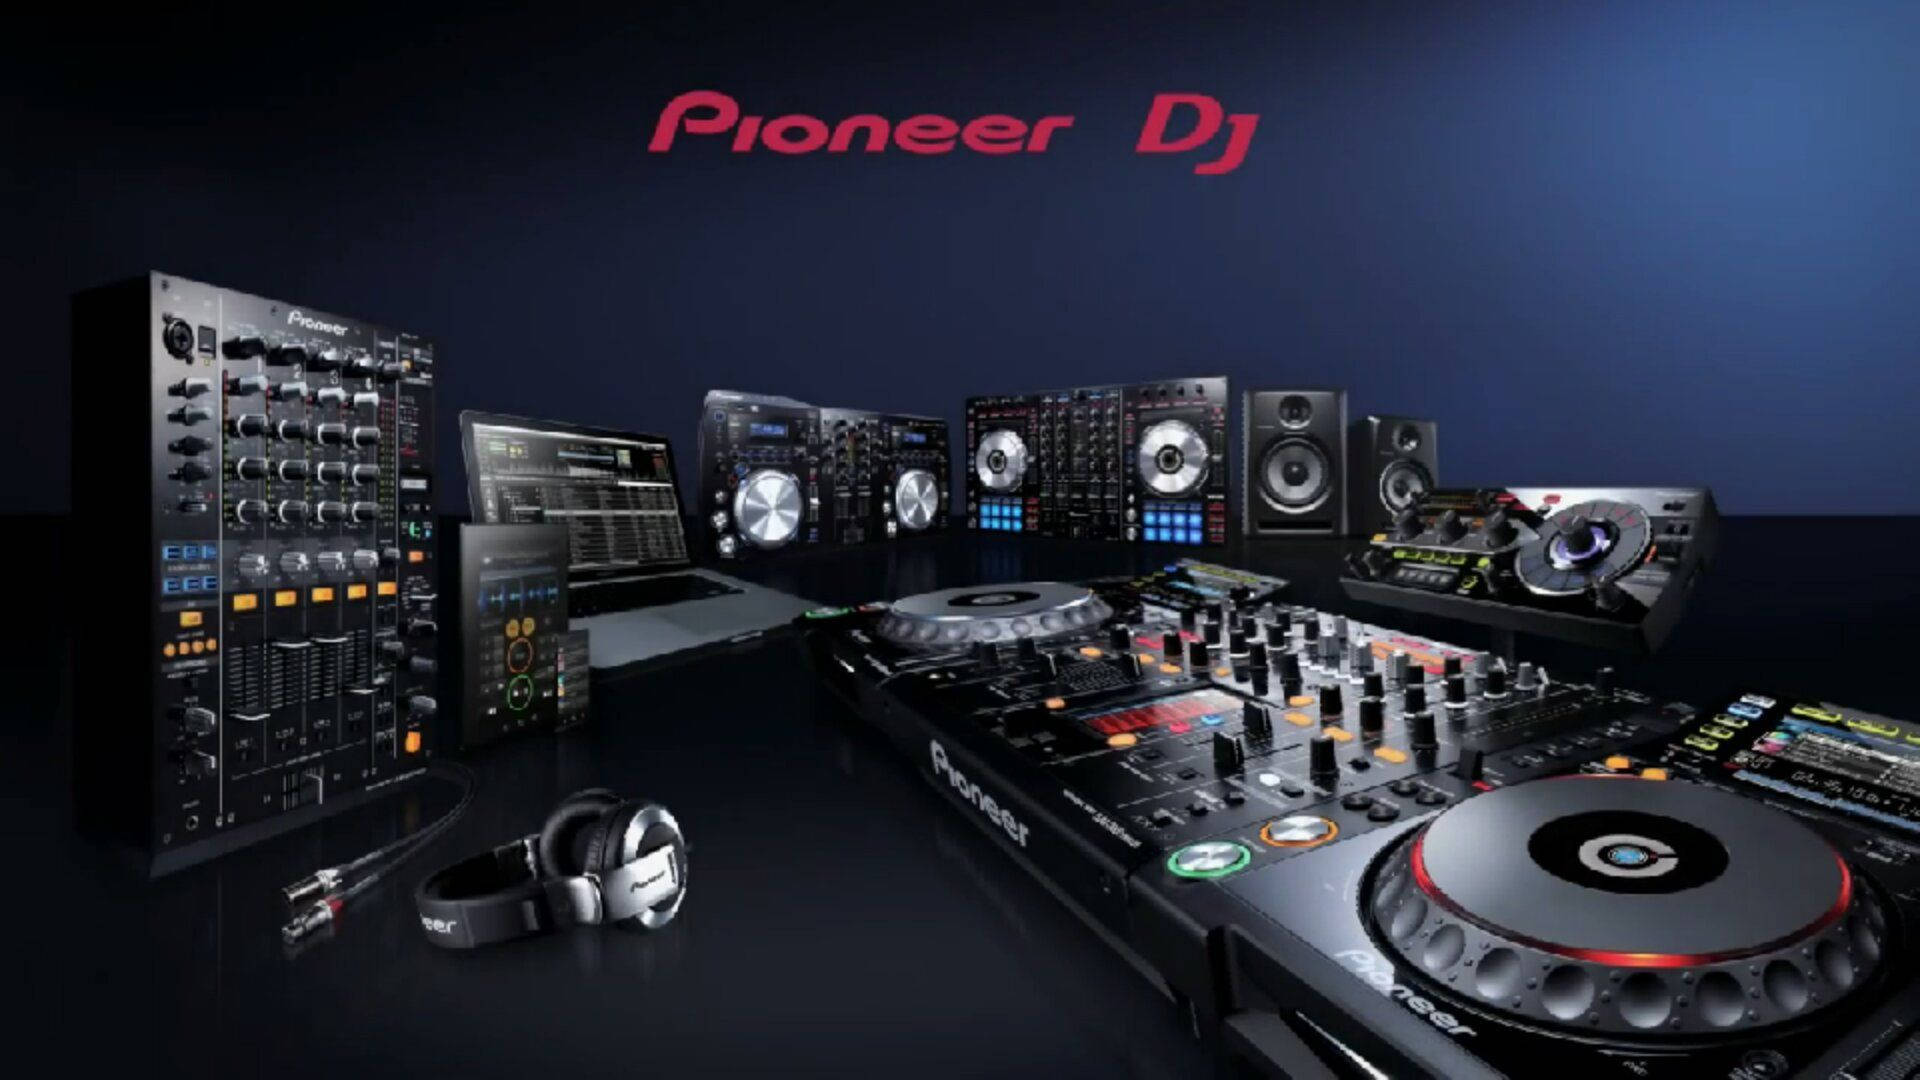 Pioneer DJ Mixer Equipment Wallpaper